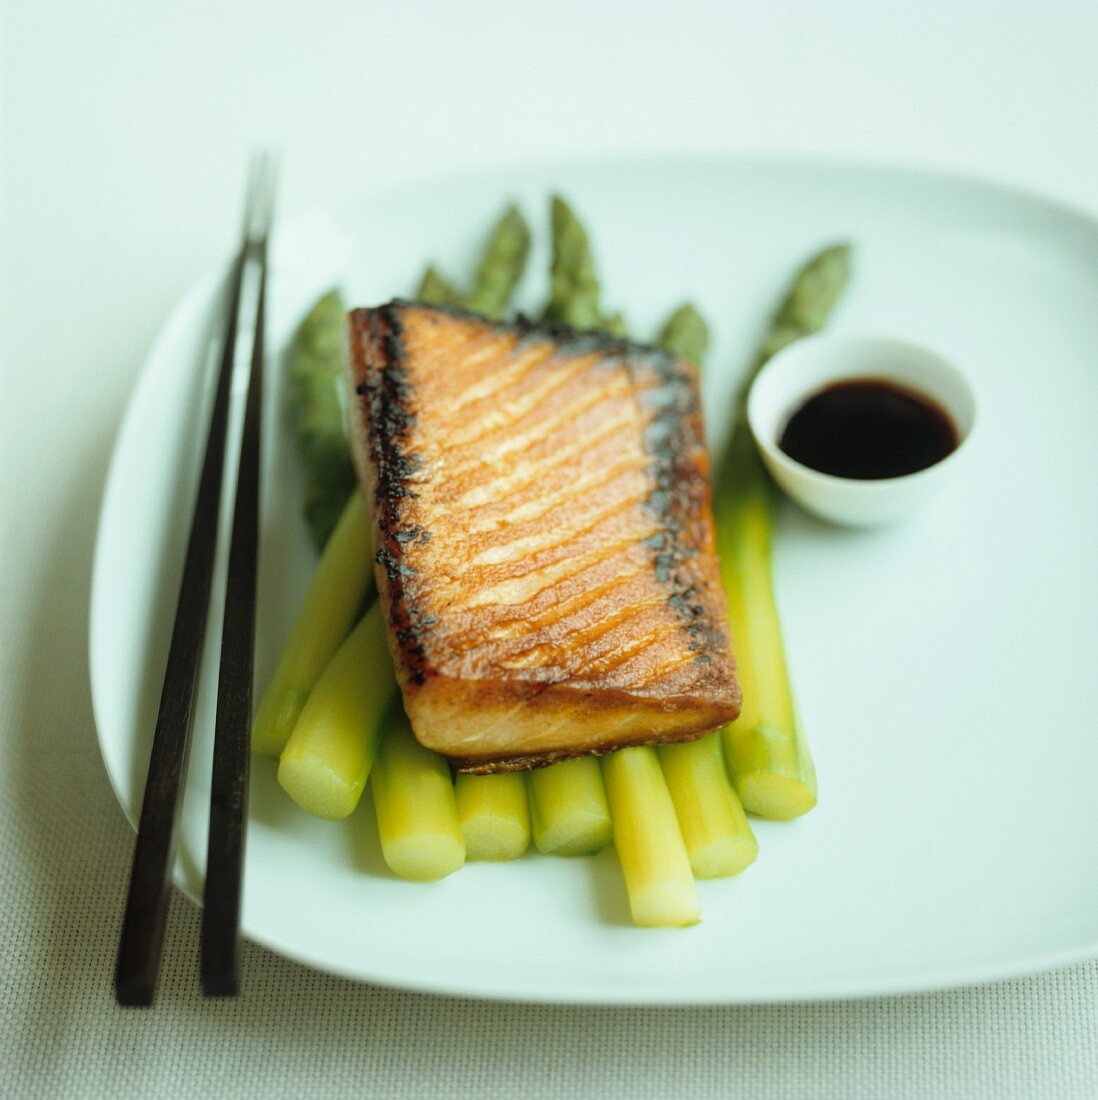 Teriyaki salmon on green asparagus with soy sauce